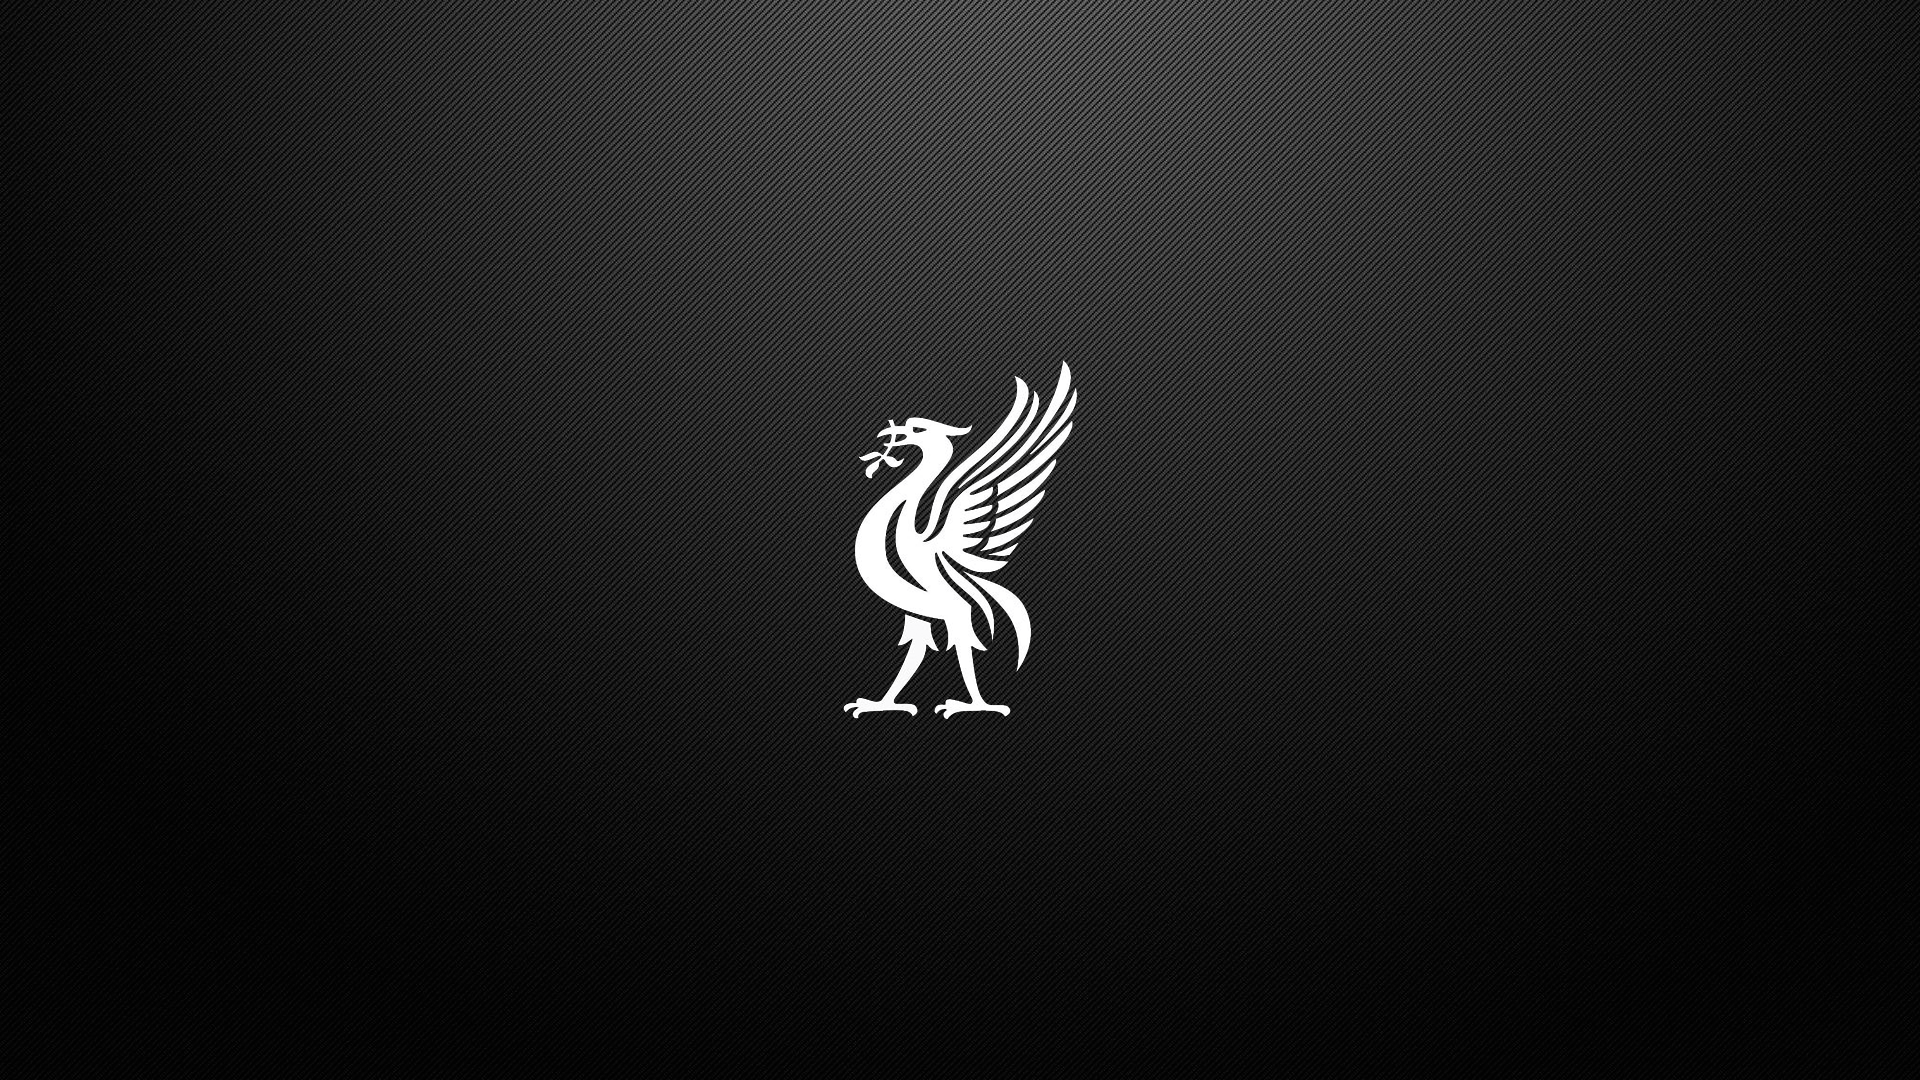 Liverpool FC chính là đội bóng được yêu thích nhất nước Anh, và bức hình nền Desktop Wallpapers này sẽ mang đến cho bạn một trải nghiệm hoàn toàn mới. Đếm ngược đến trận đấu tiếp theo với hình ảnh của đội bóng yêu thích trên màn hình máy tính của bạn!